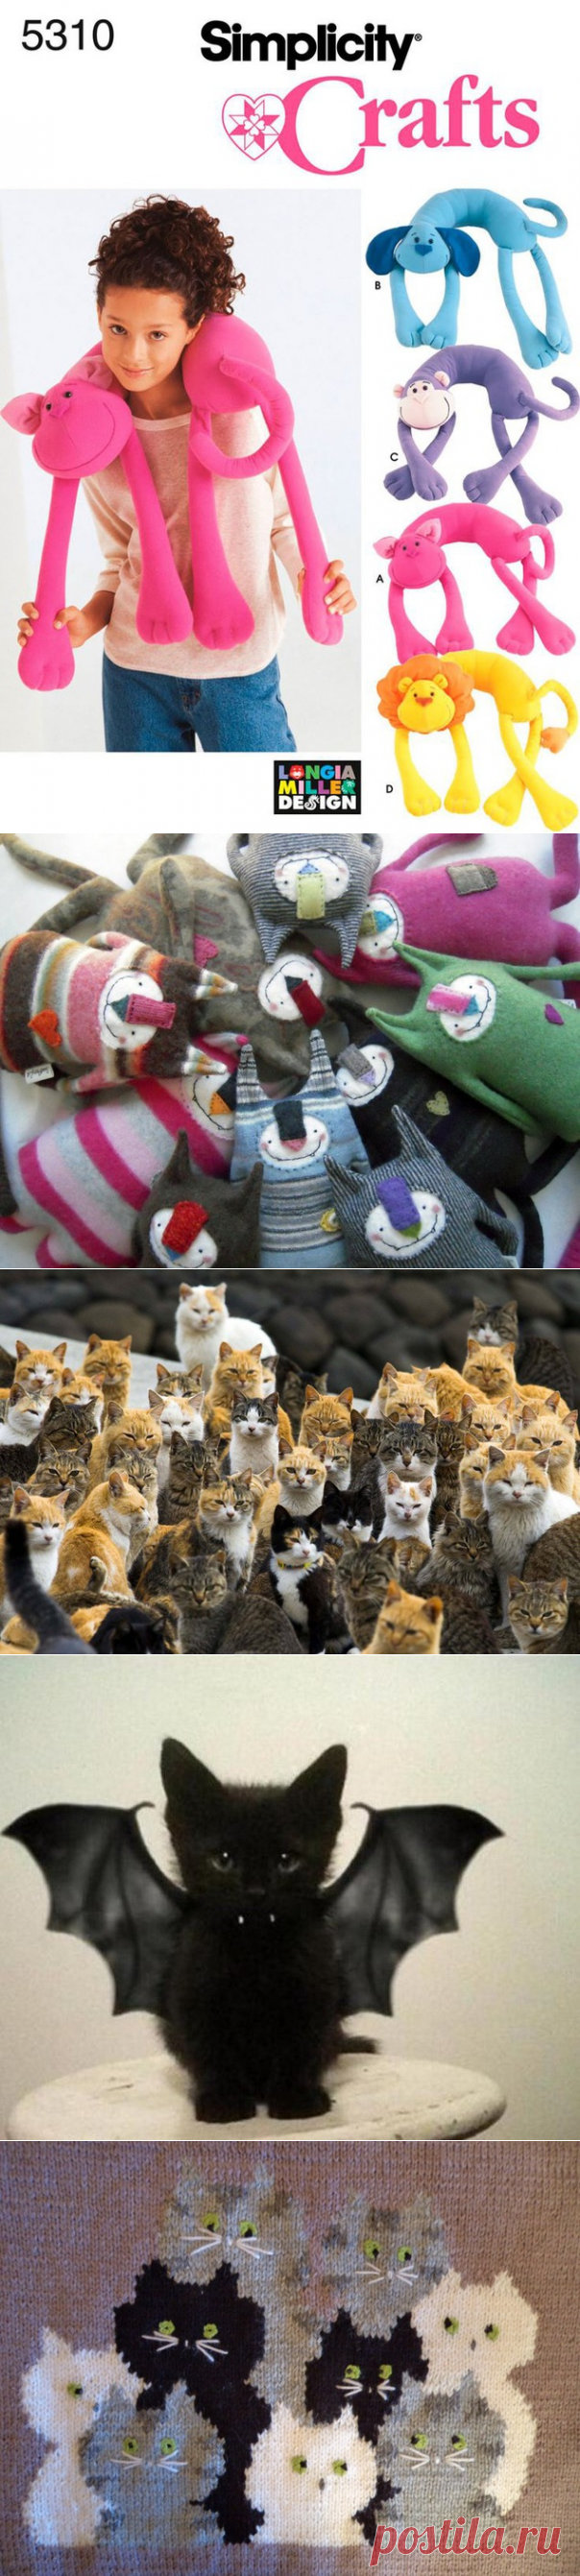 «Кошачья» тема в декоре, одежде и украшениях - Ярмарка Мастеров - ручная работа, handmade